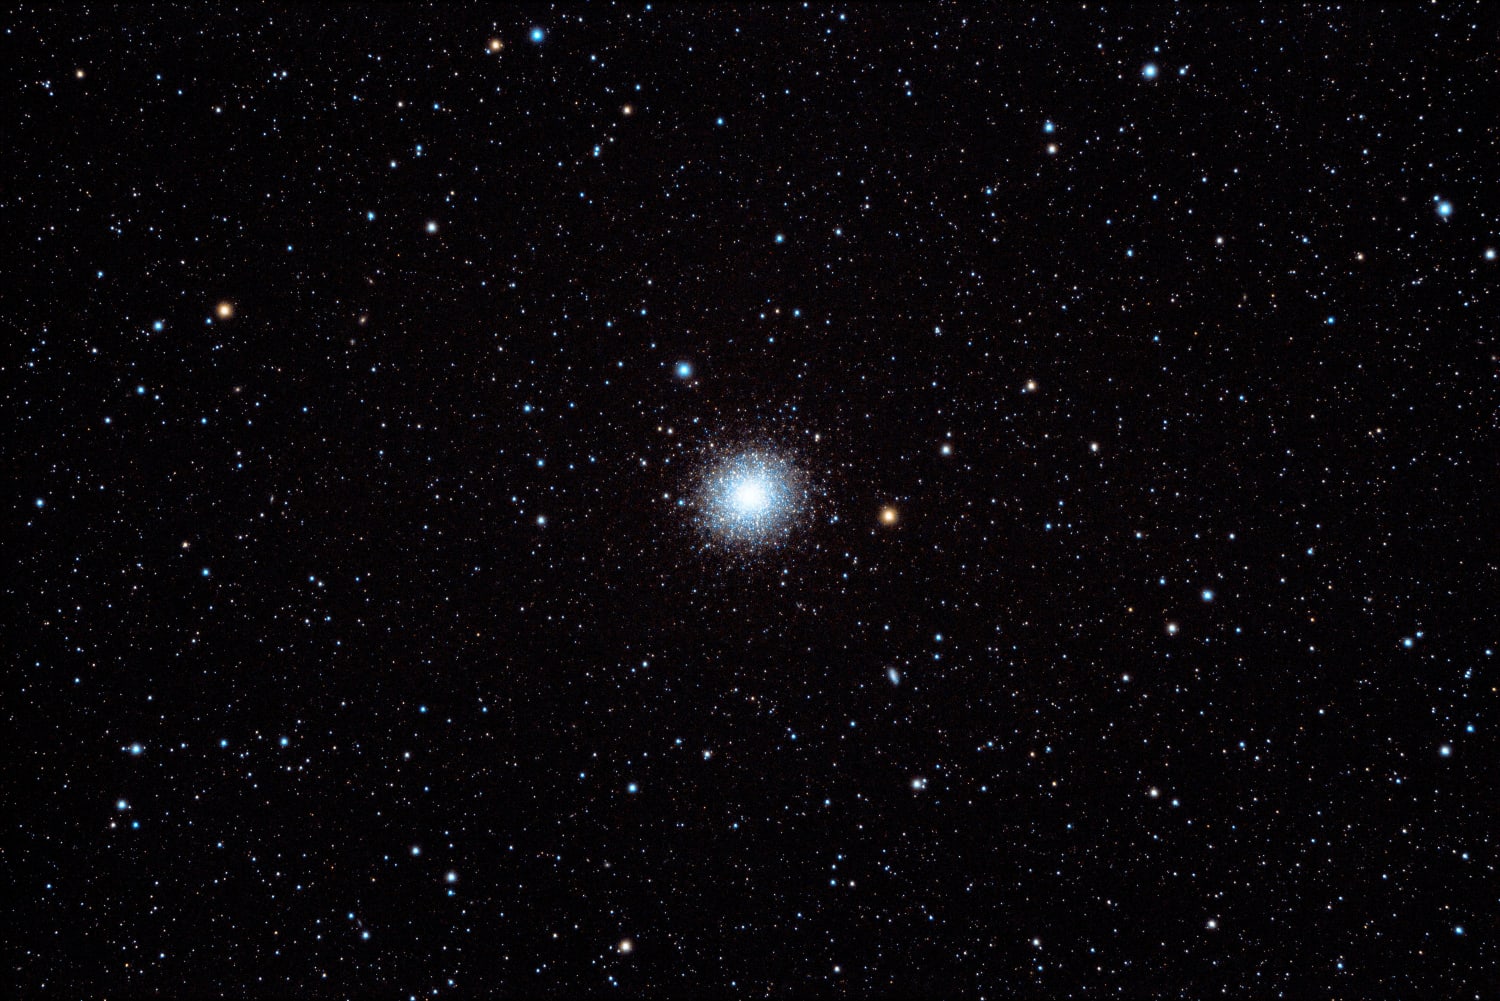 M13 - The Great Globular Star Cluster in Hercules